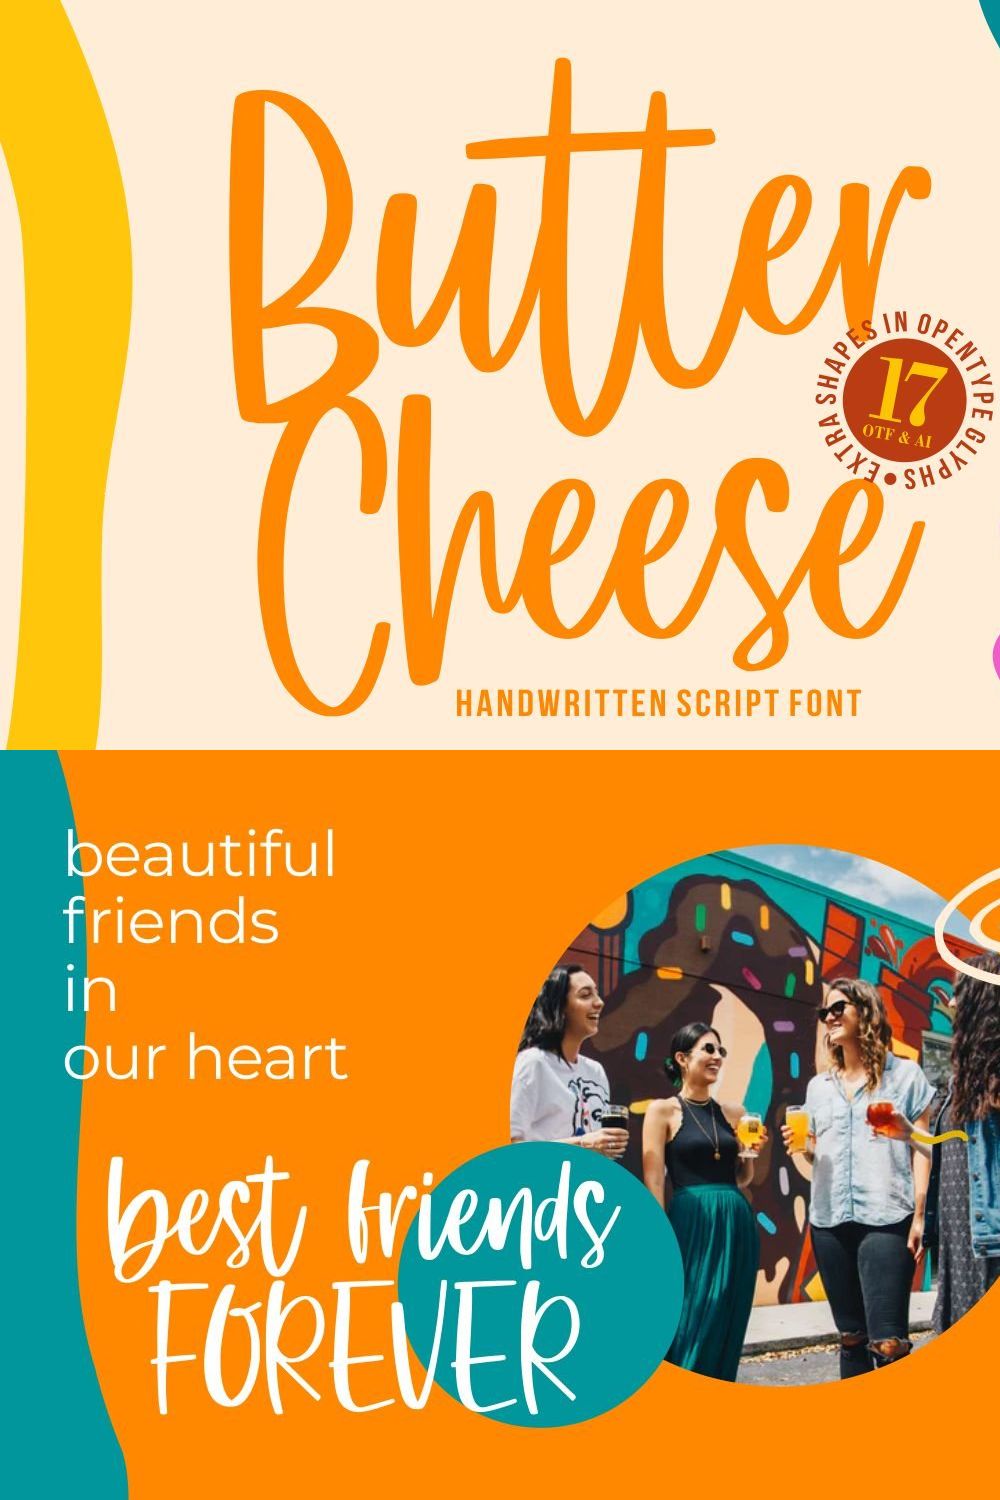 Butter Cheese - Handwritten Font pinterest preview image.